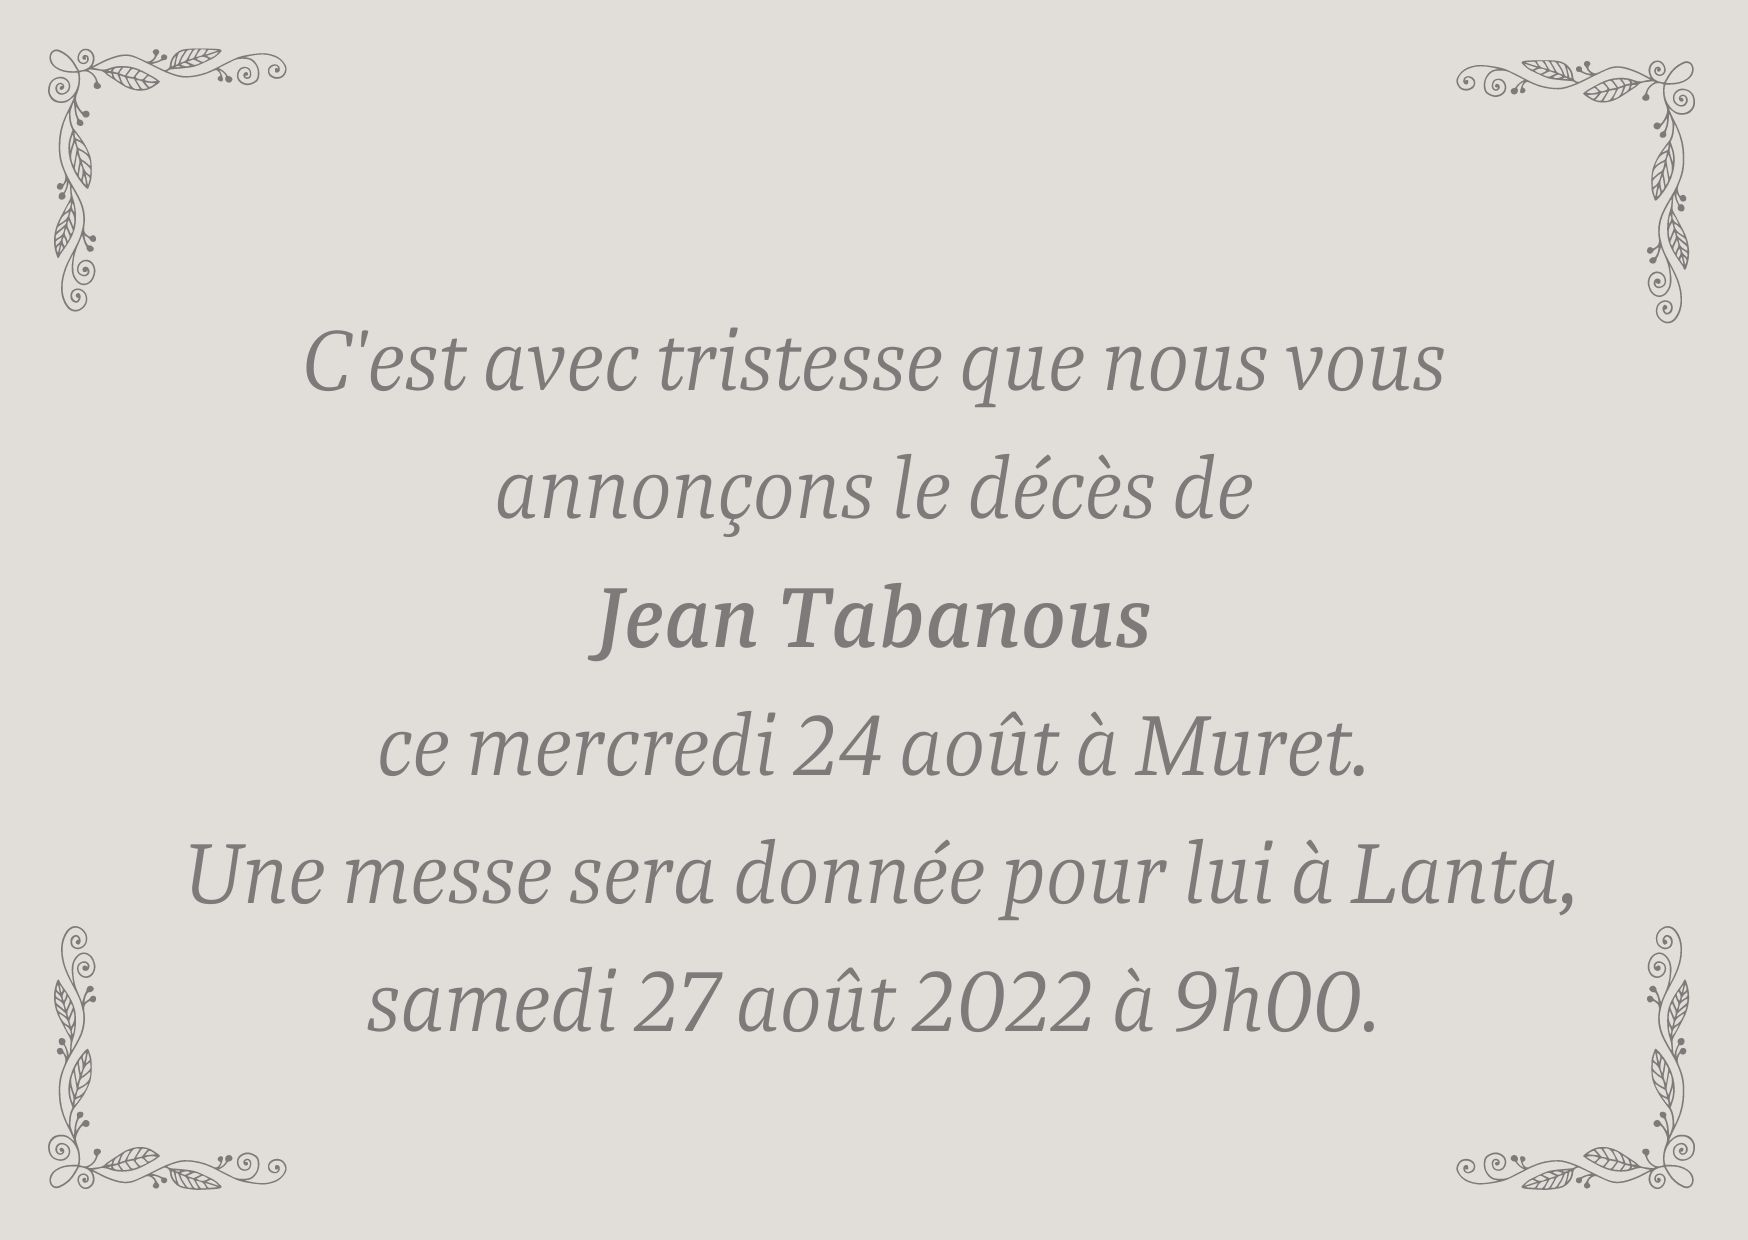 C'est avec tristesse que nous vous annonçons le décès de Jean Tabanous ce jour mercredi 24 août à Muret. Une messe sera donnée pour lui à Lanta, samedi 27 août 2022 à 9h00.